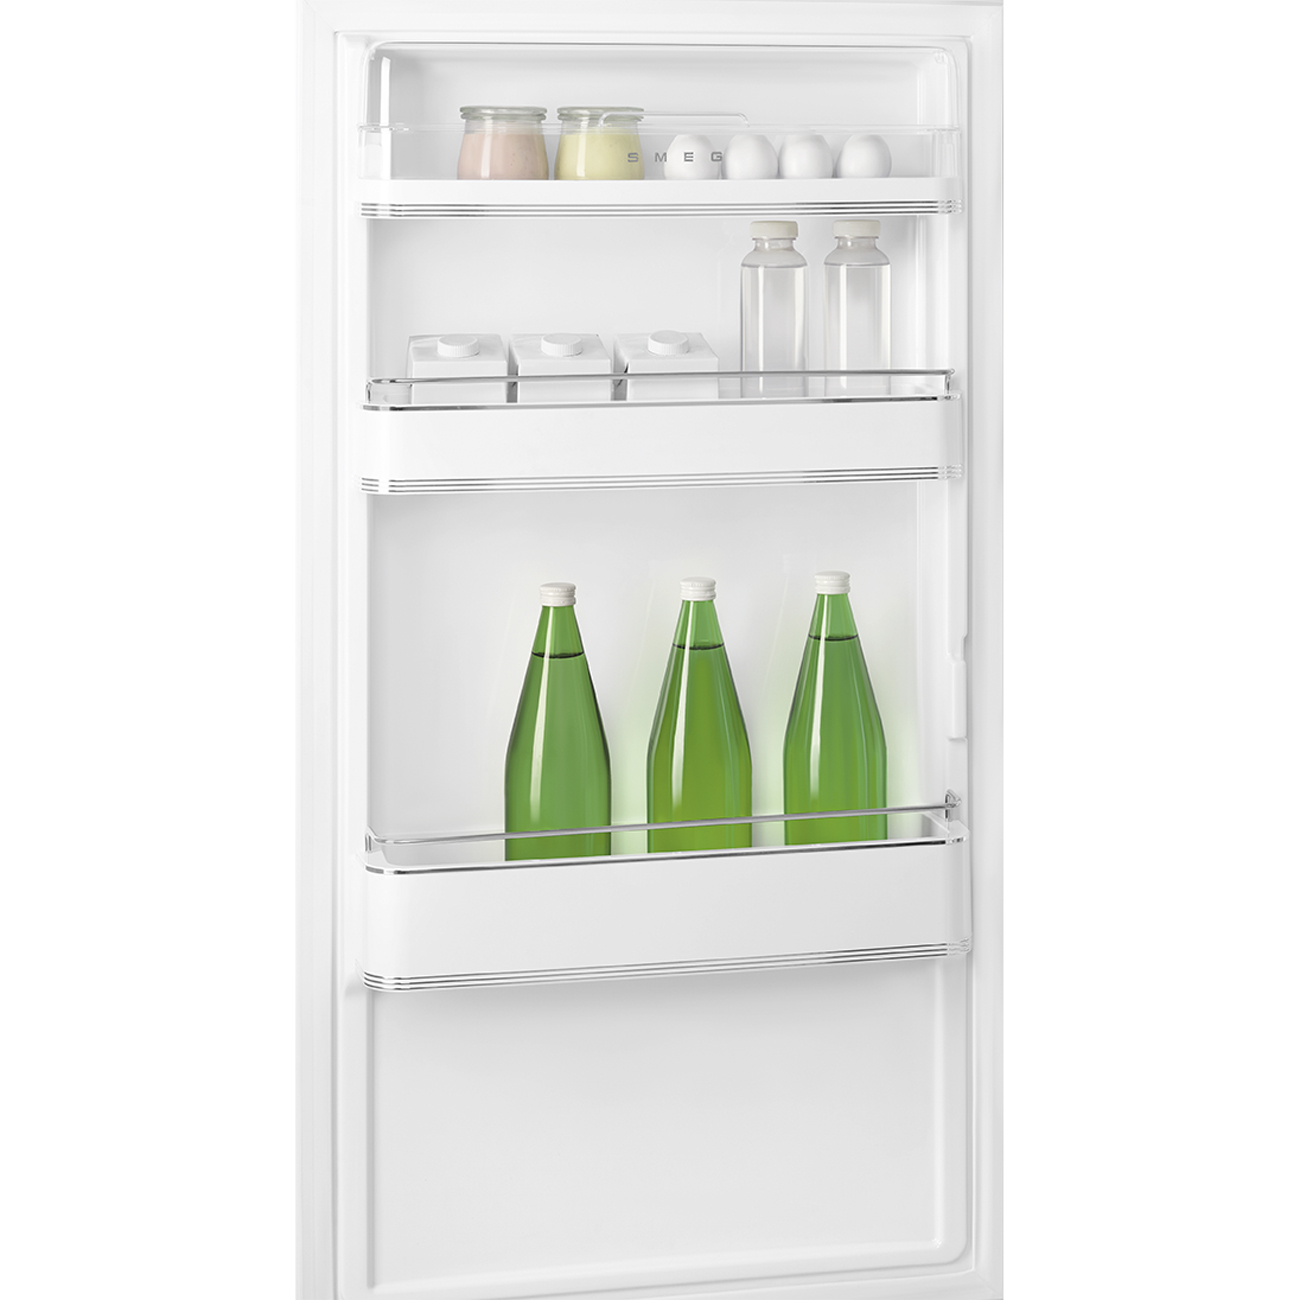 Creme Retro-Kühlschränke von Smeg_7